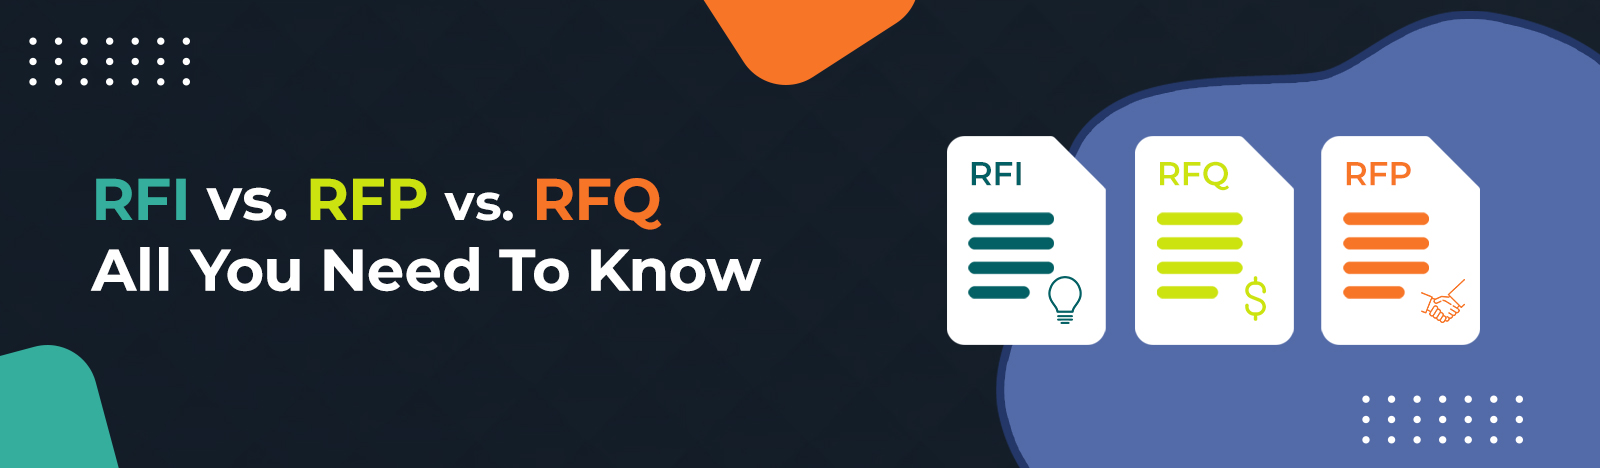 RFI vs RFP vs RFQ